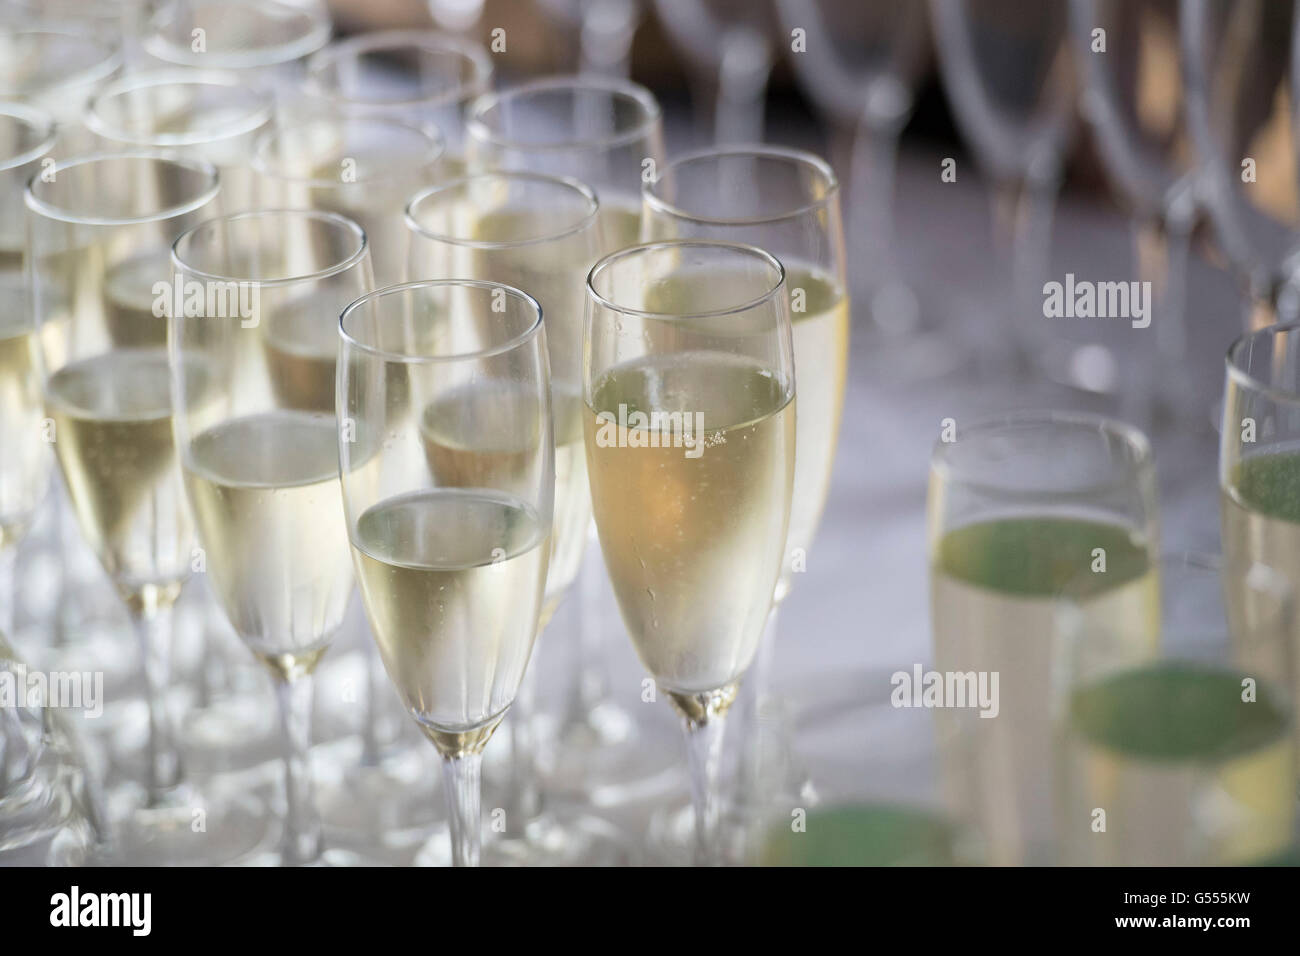 Champagne servi dans des verres d'une bouteille lors d'une réception au champagne. Banque D'Images